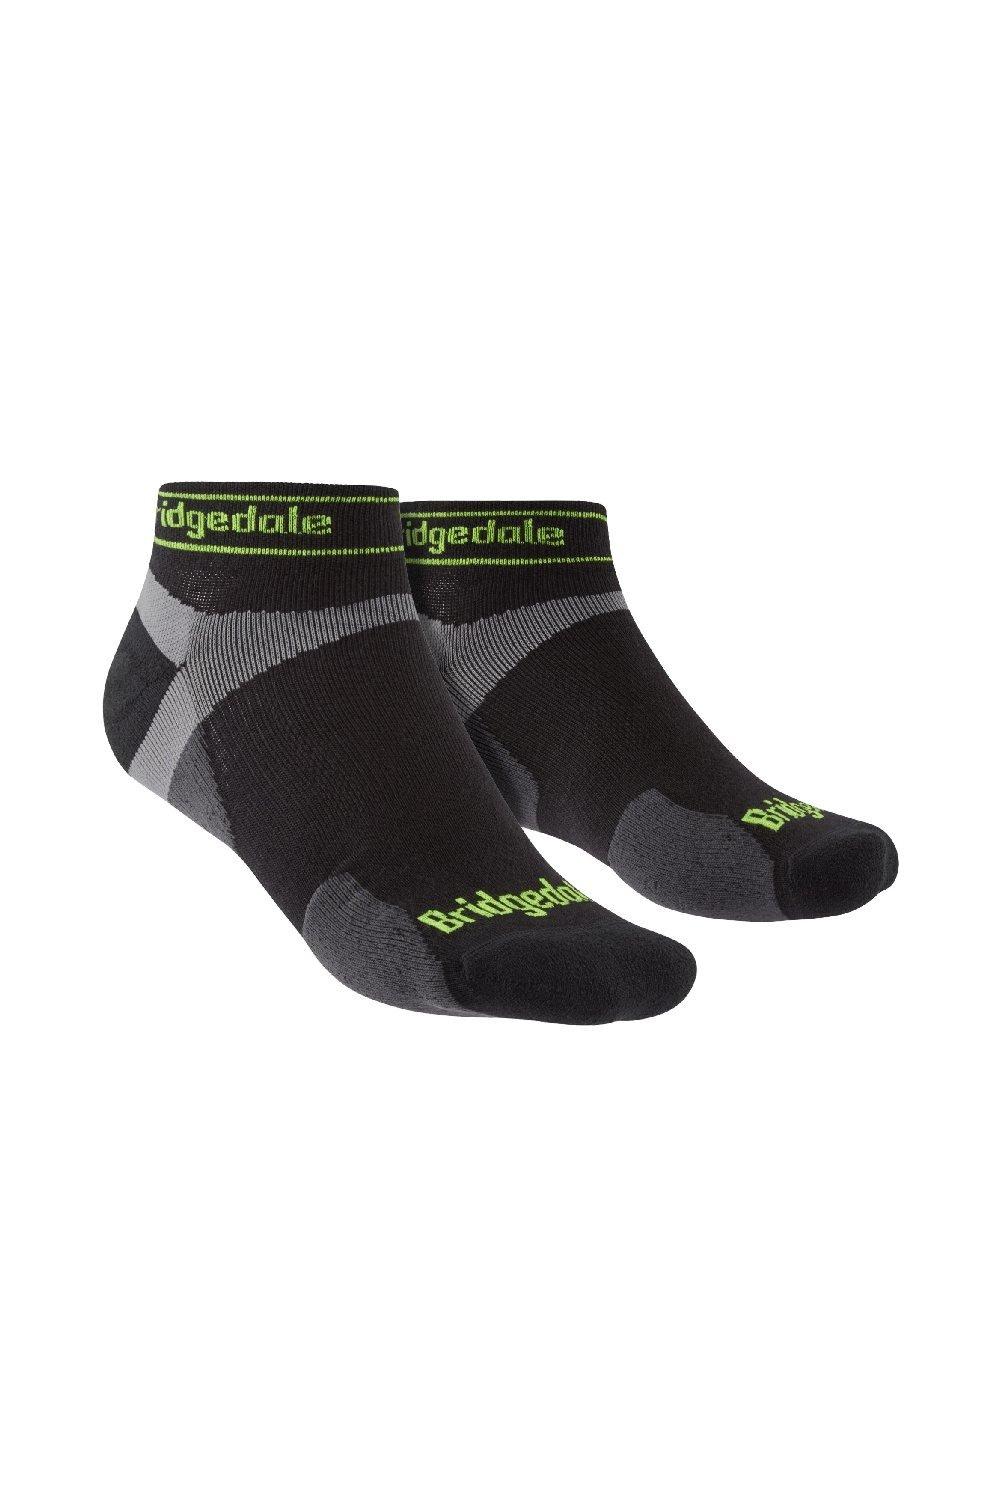 Trail Running Ultralight T2 Merino Wool Sport Low Socks